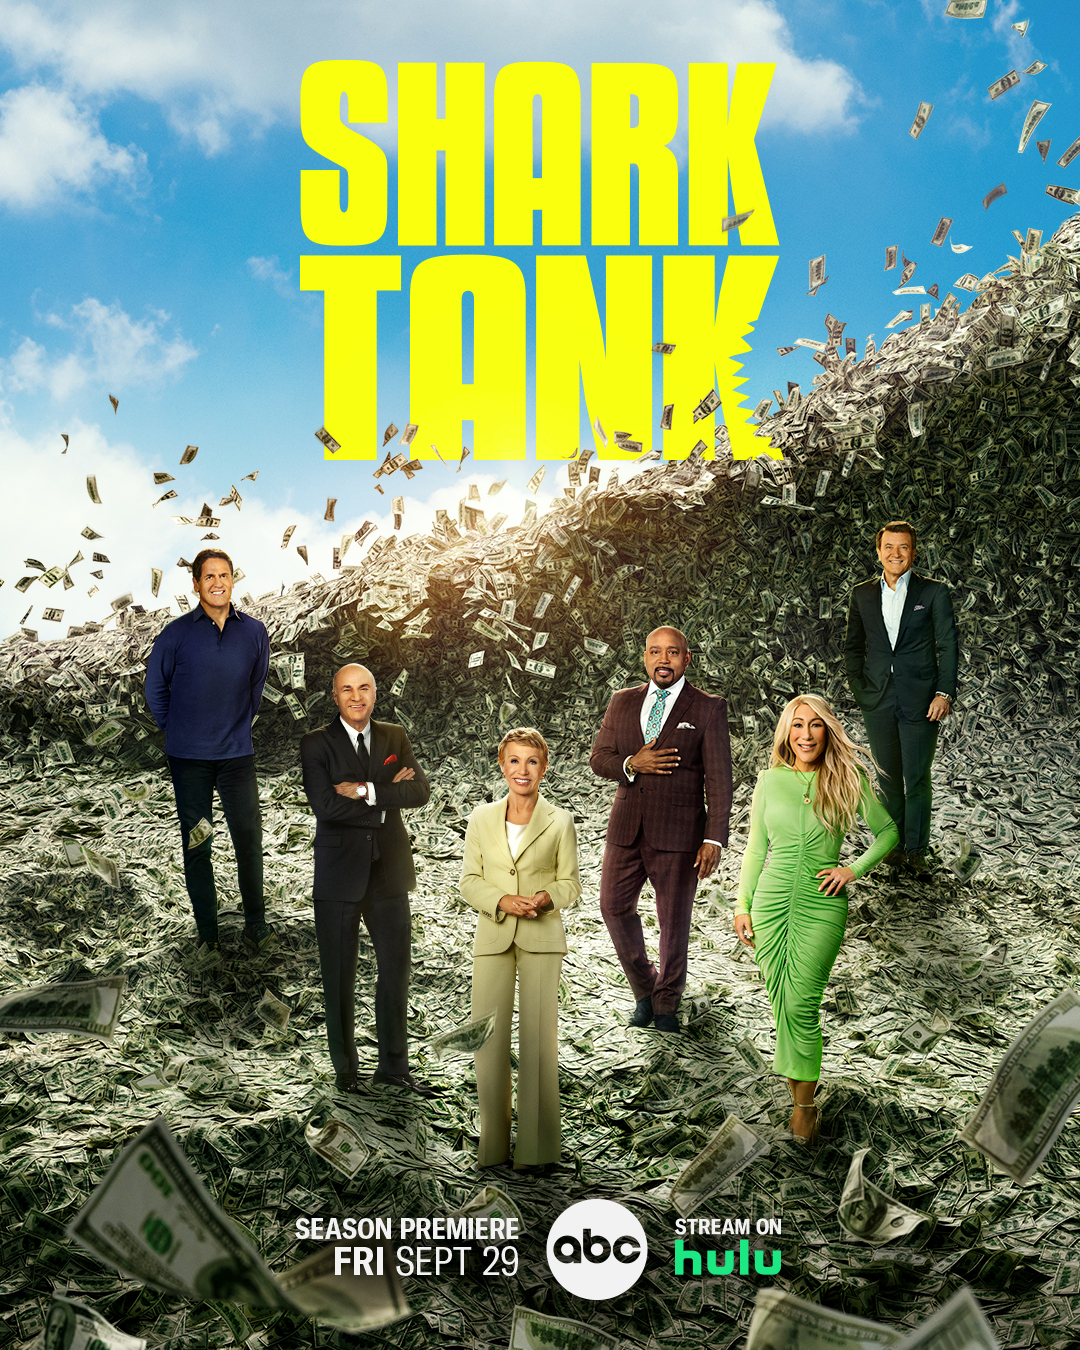 Update: Dalton boy sinks deal on season premiere of 'Shark Tank